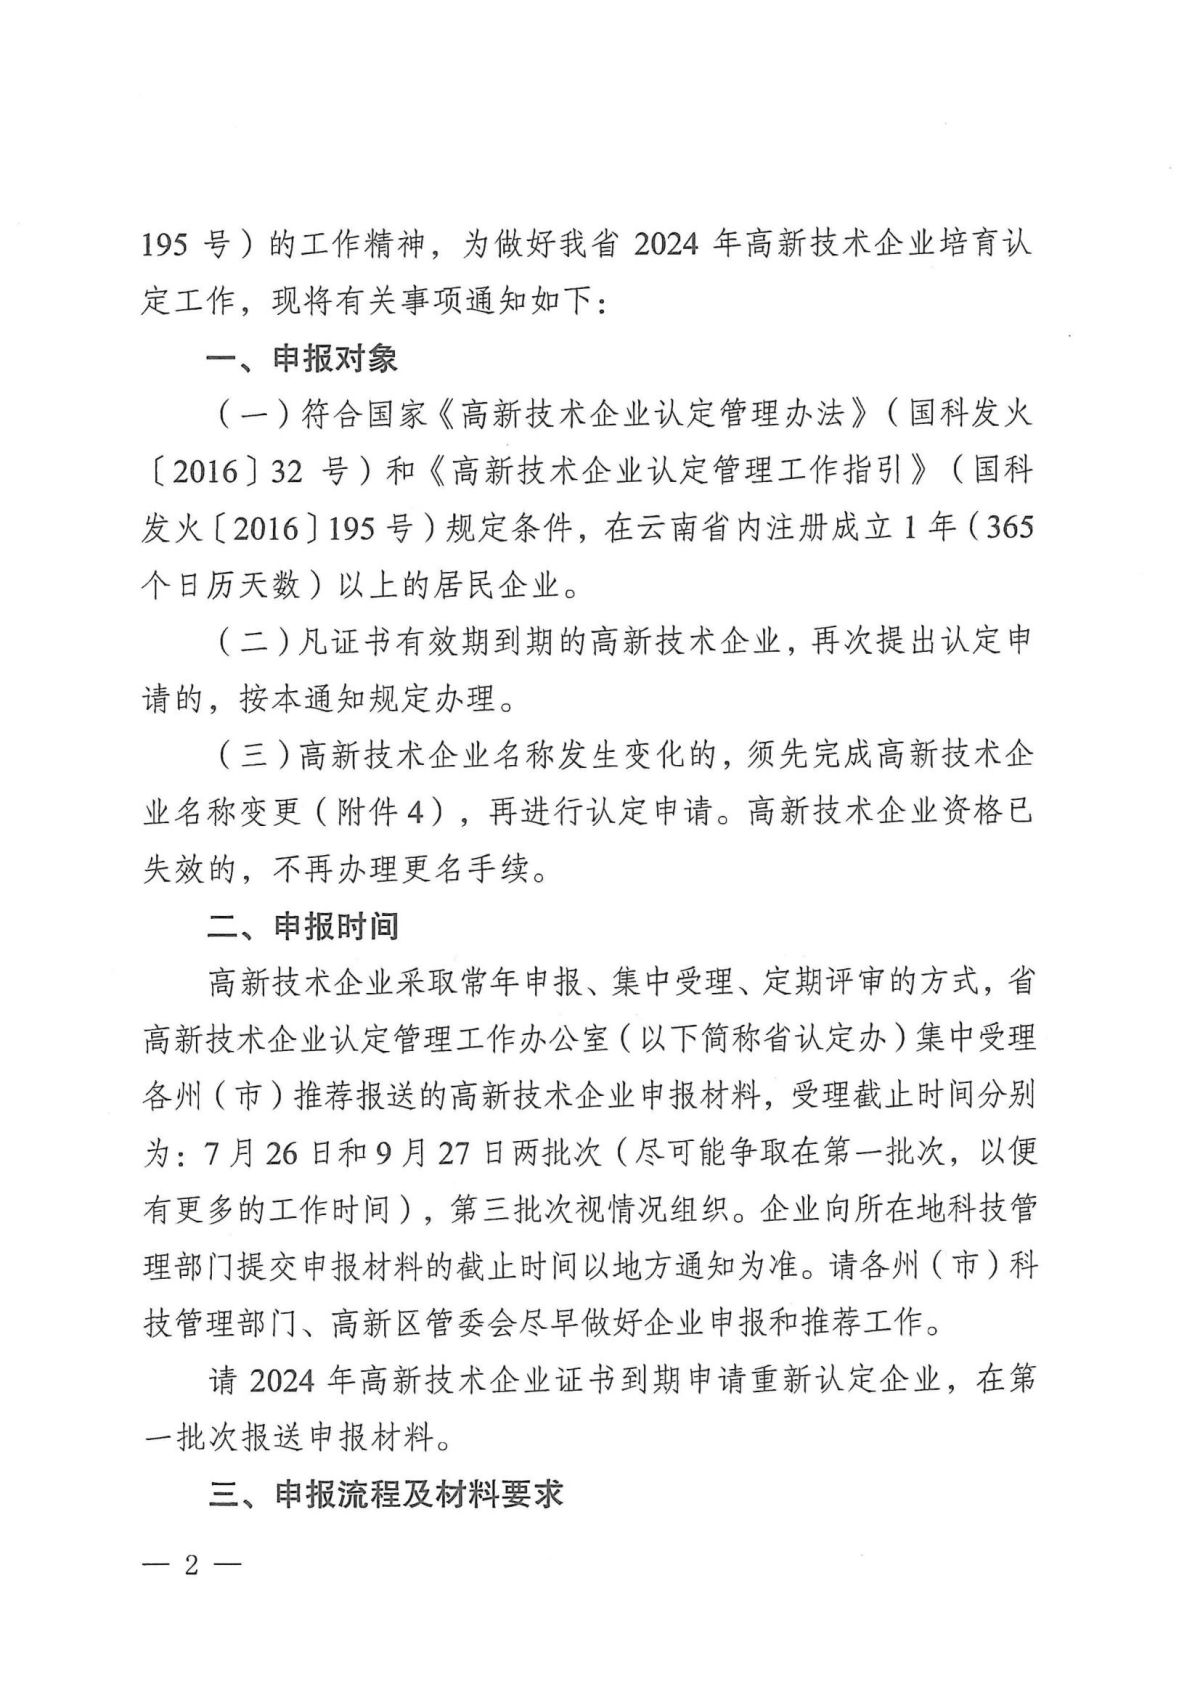 附件1：关于云南省2024年高新技术企业培育认定工作有关事项的通知_01.jpg